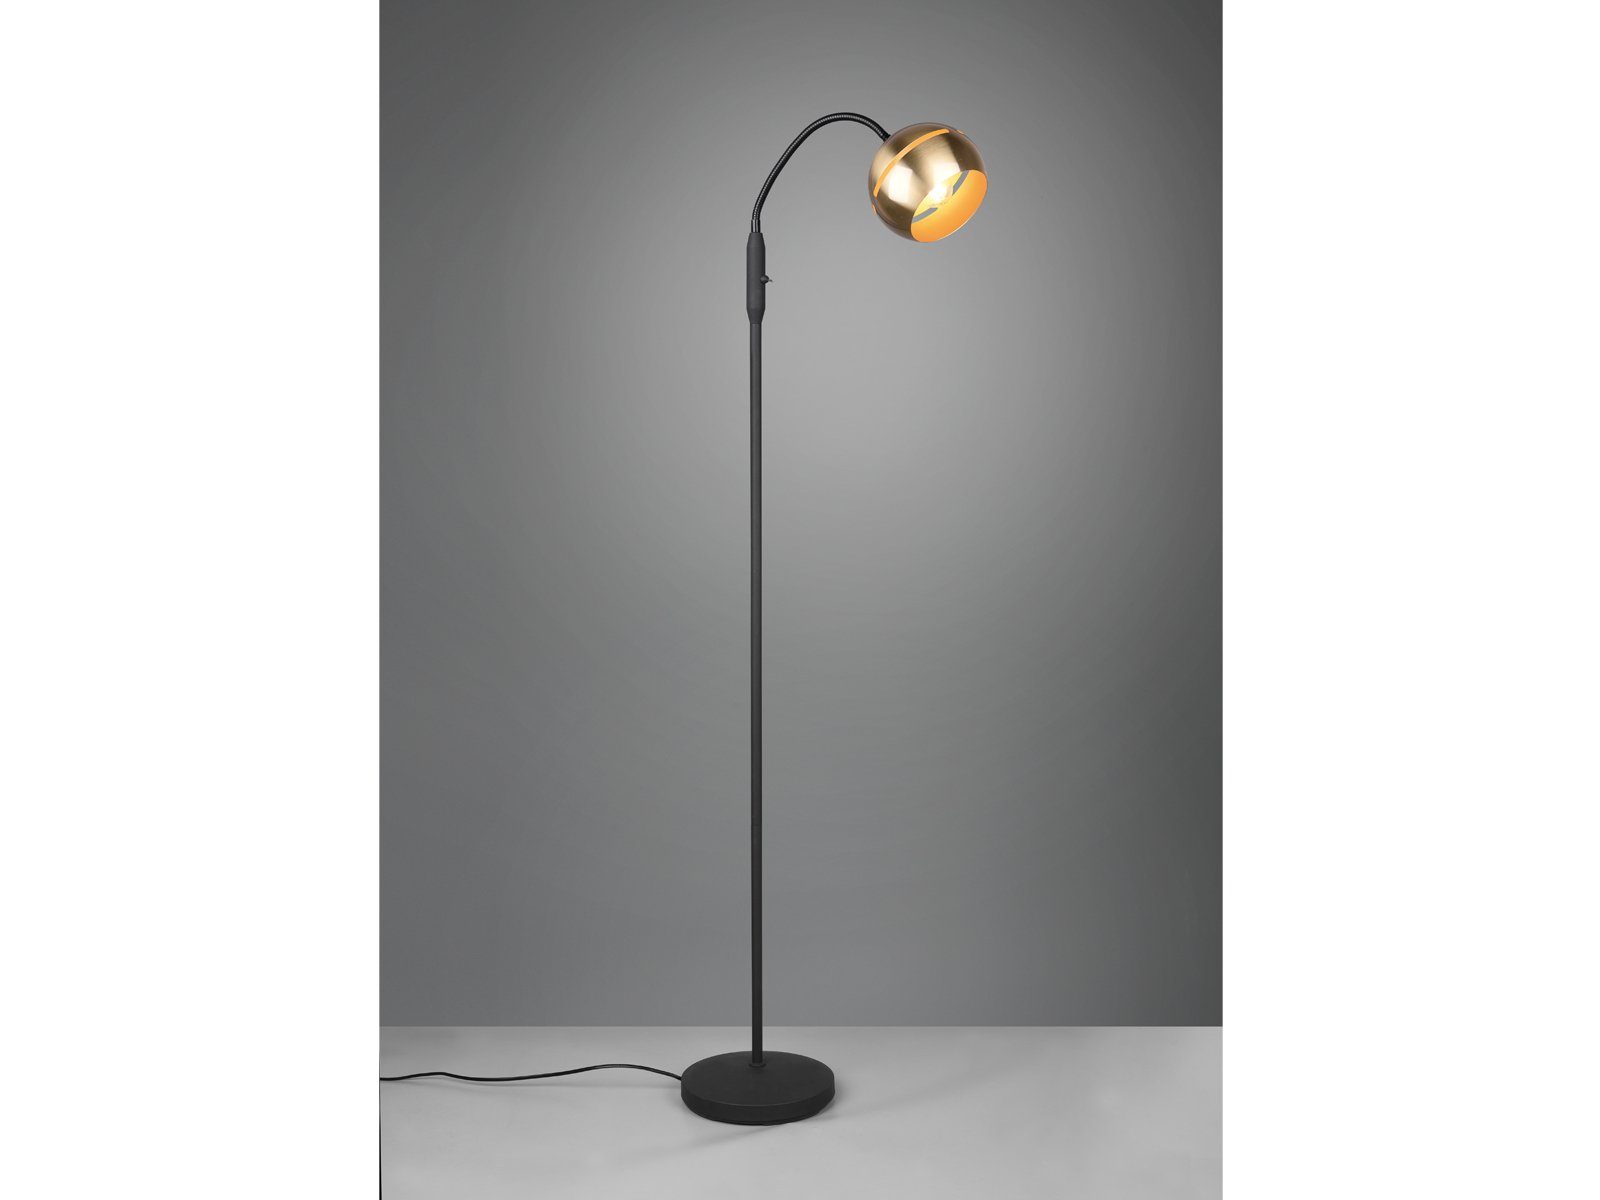 meineWunschleuchte LED Stehlampe, Design-klassiker Stand Lese-lampe für  Leseecke & Büro mit Flexarm zum lesen, Schwarz Gold